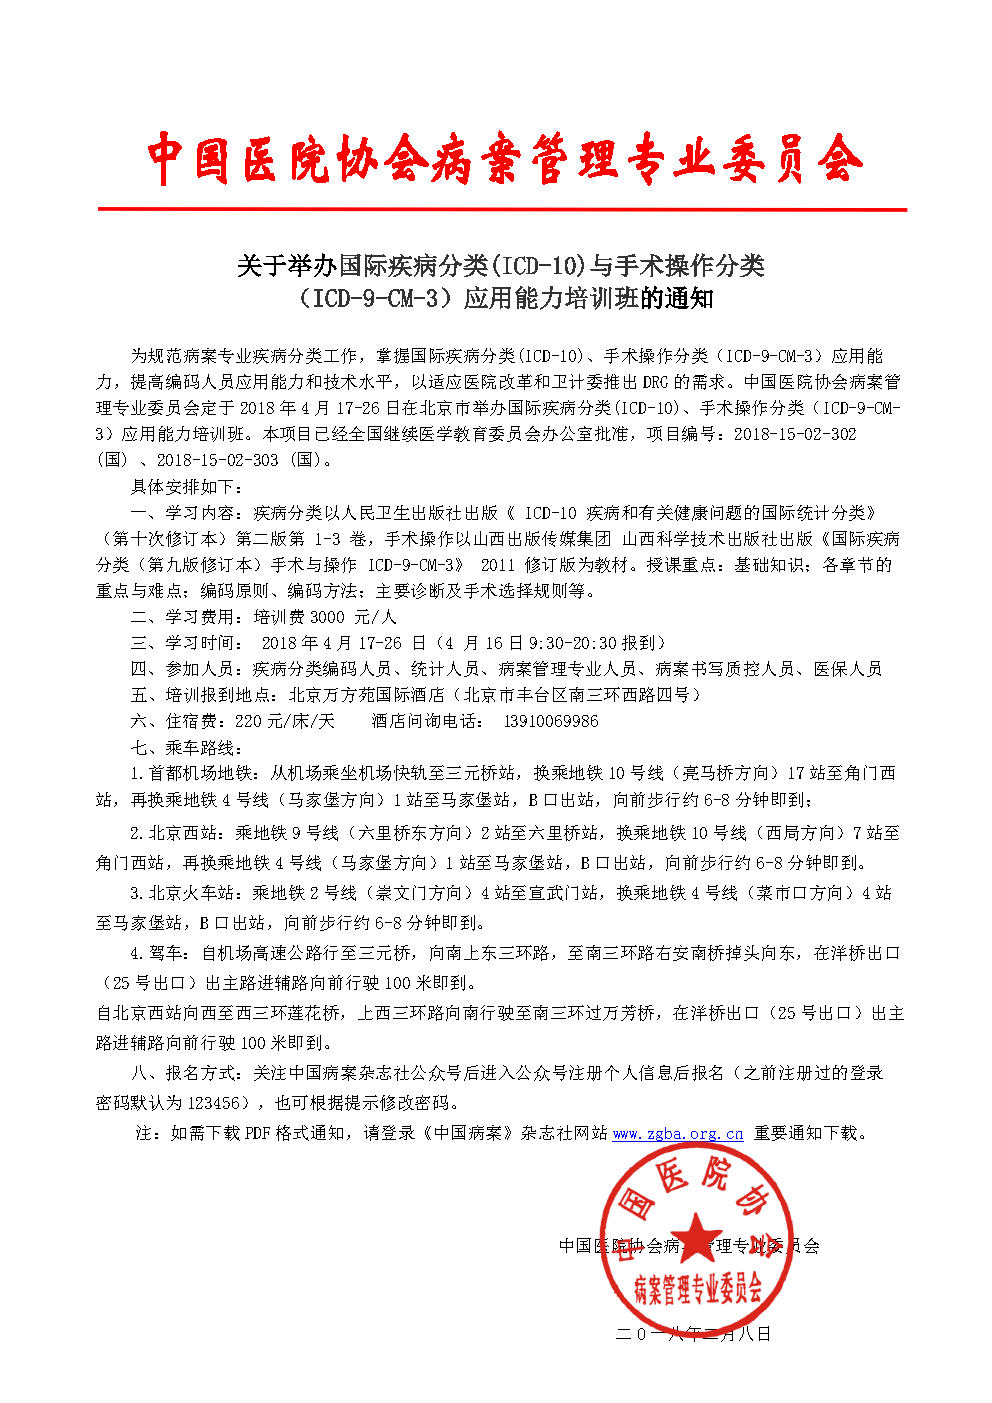 2018年4月北京班疾病与手术培训班通知jpg_Page1.jpg